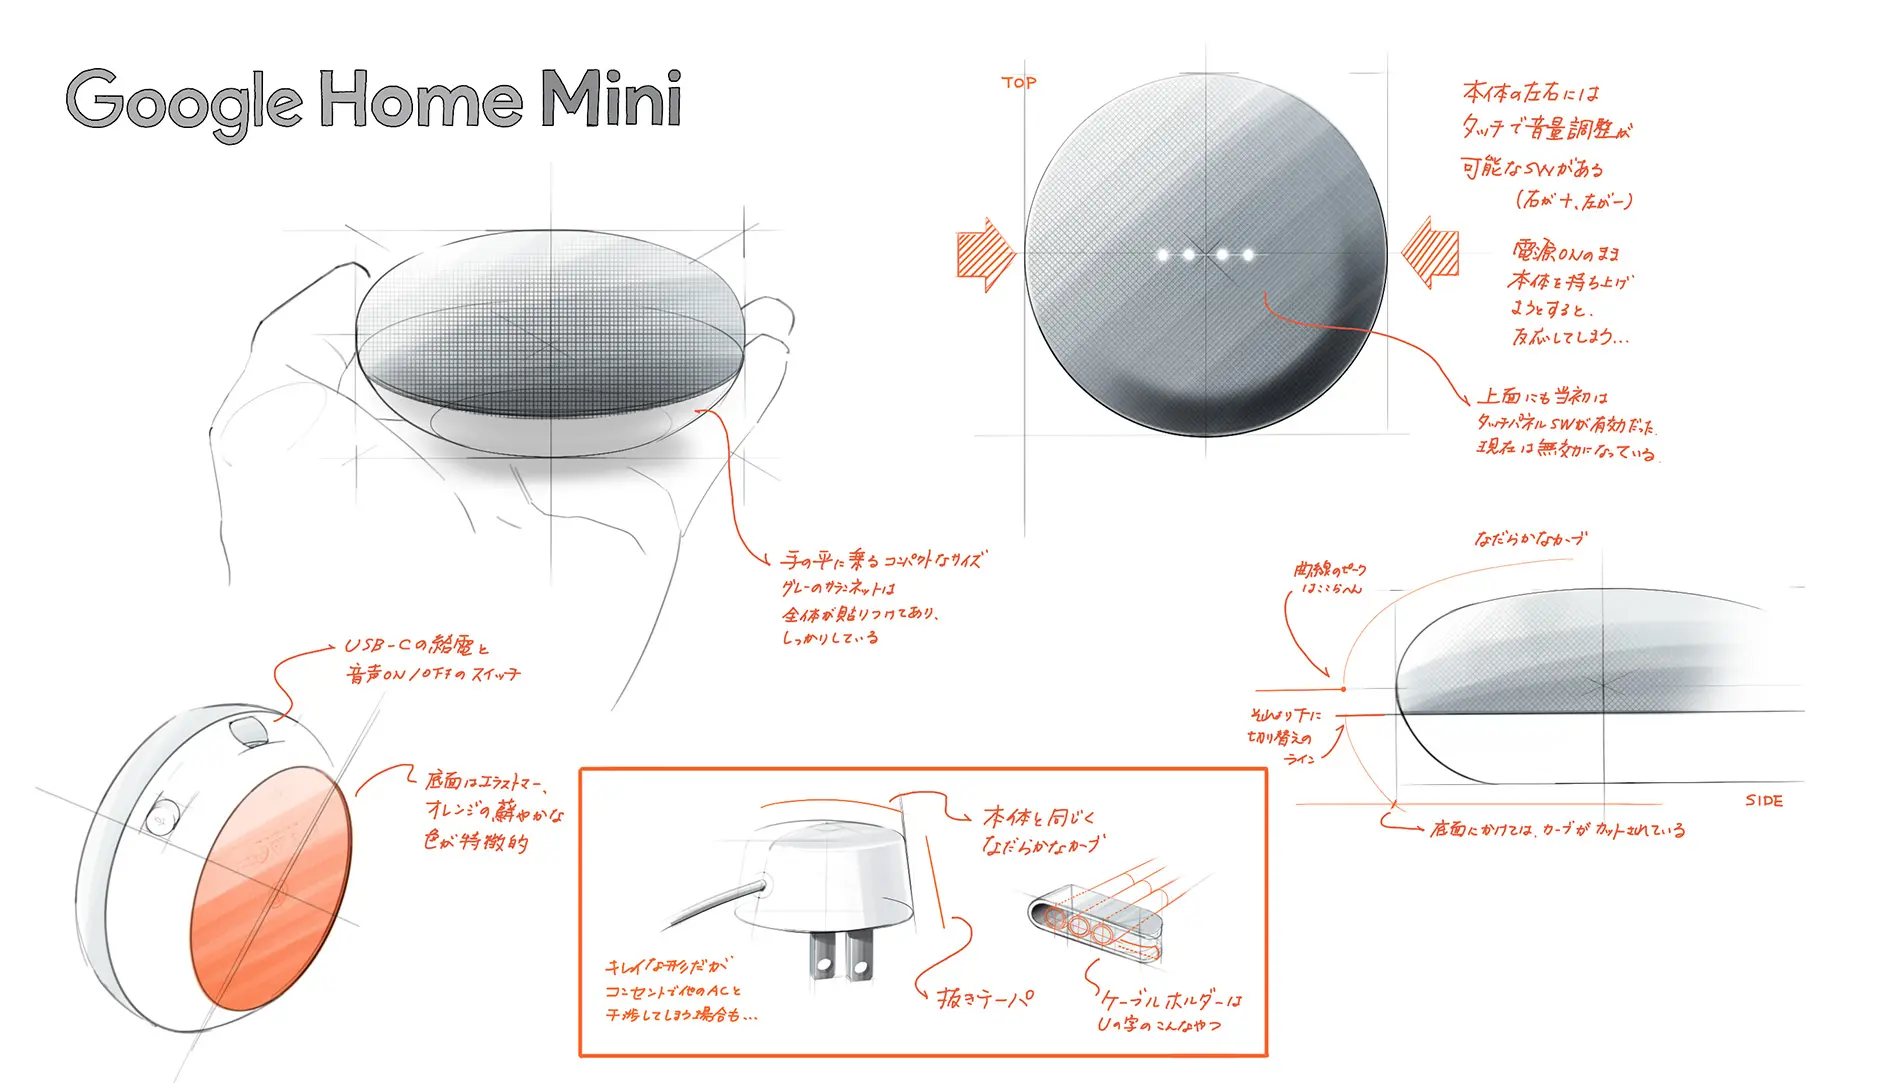 プロダクトのデザイン分析・観察スケッチ01 Google Home Mini